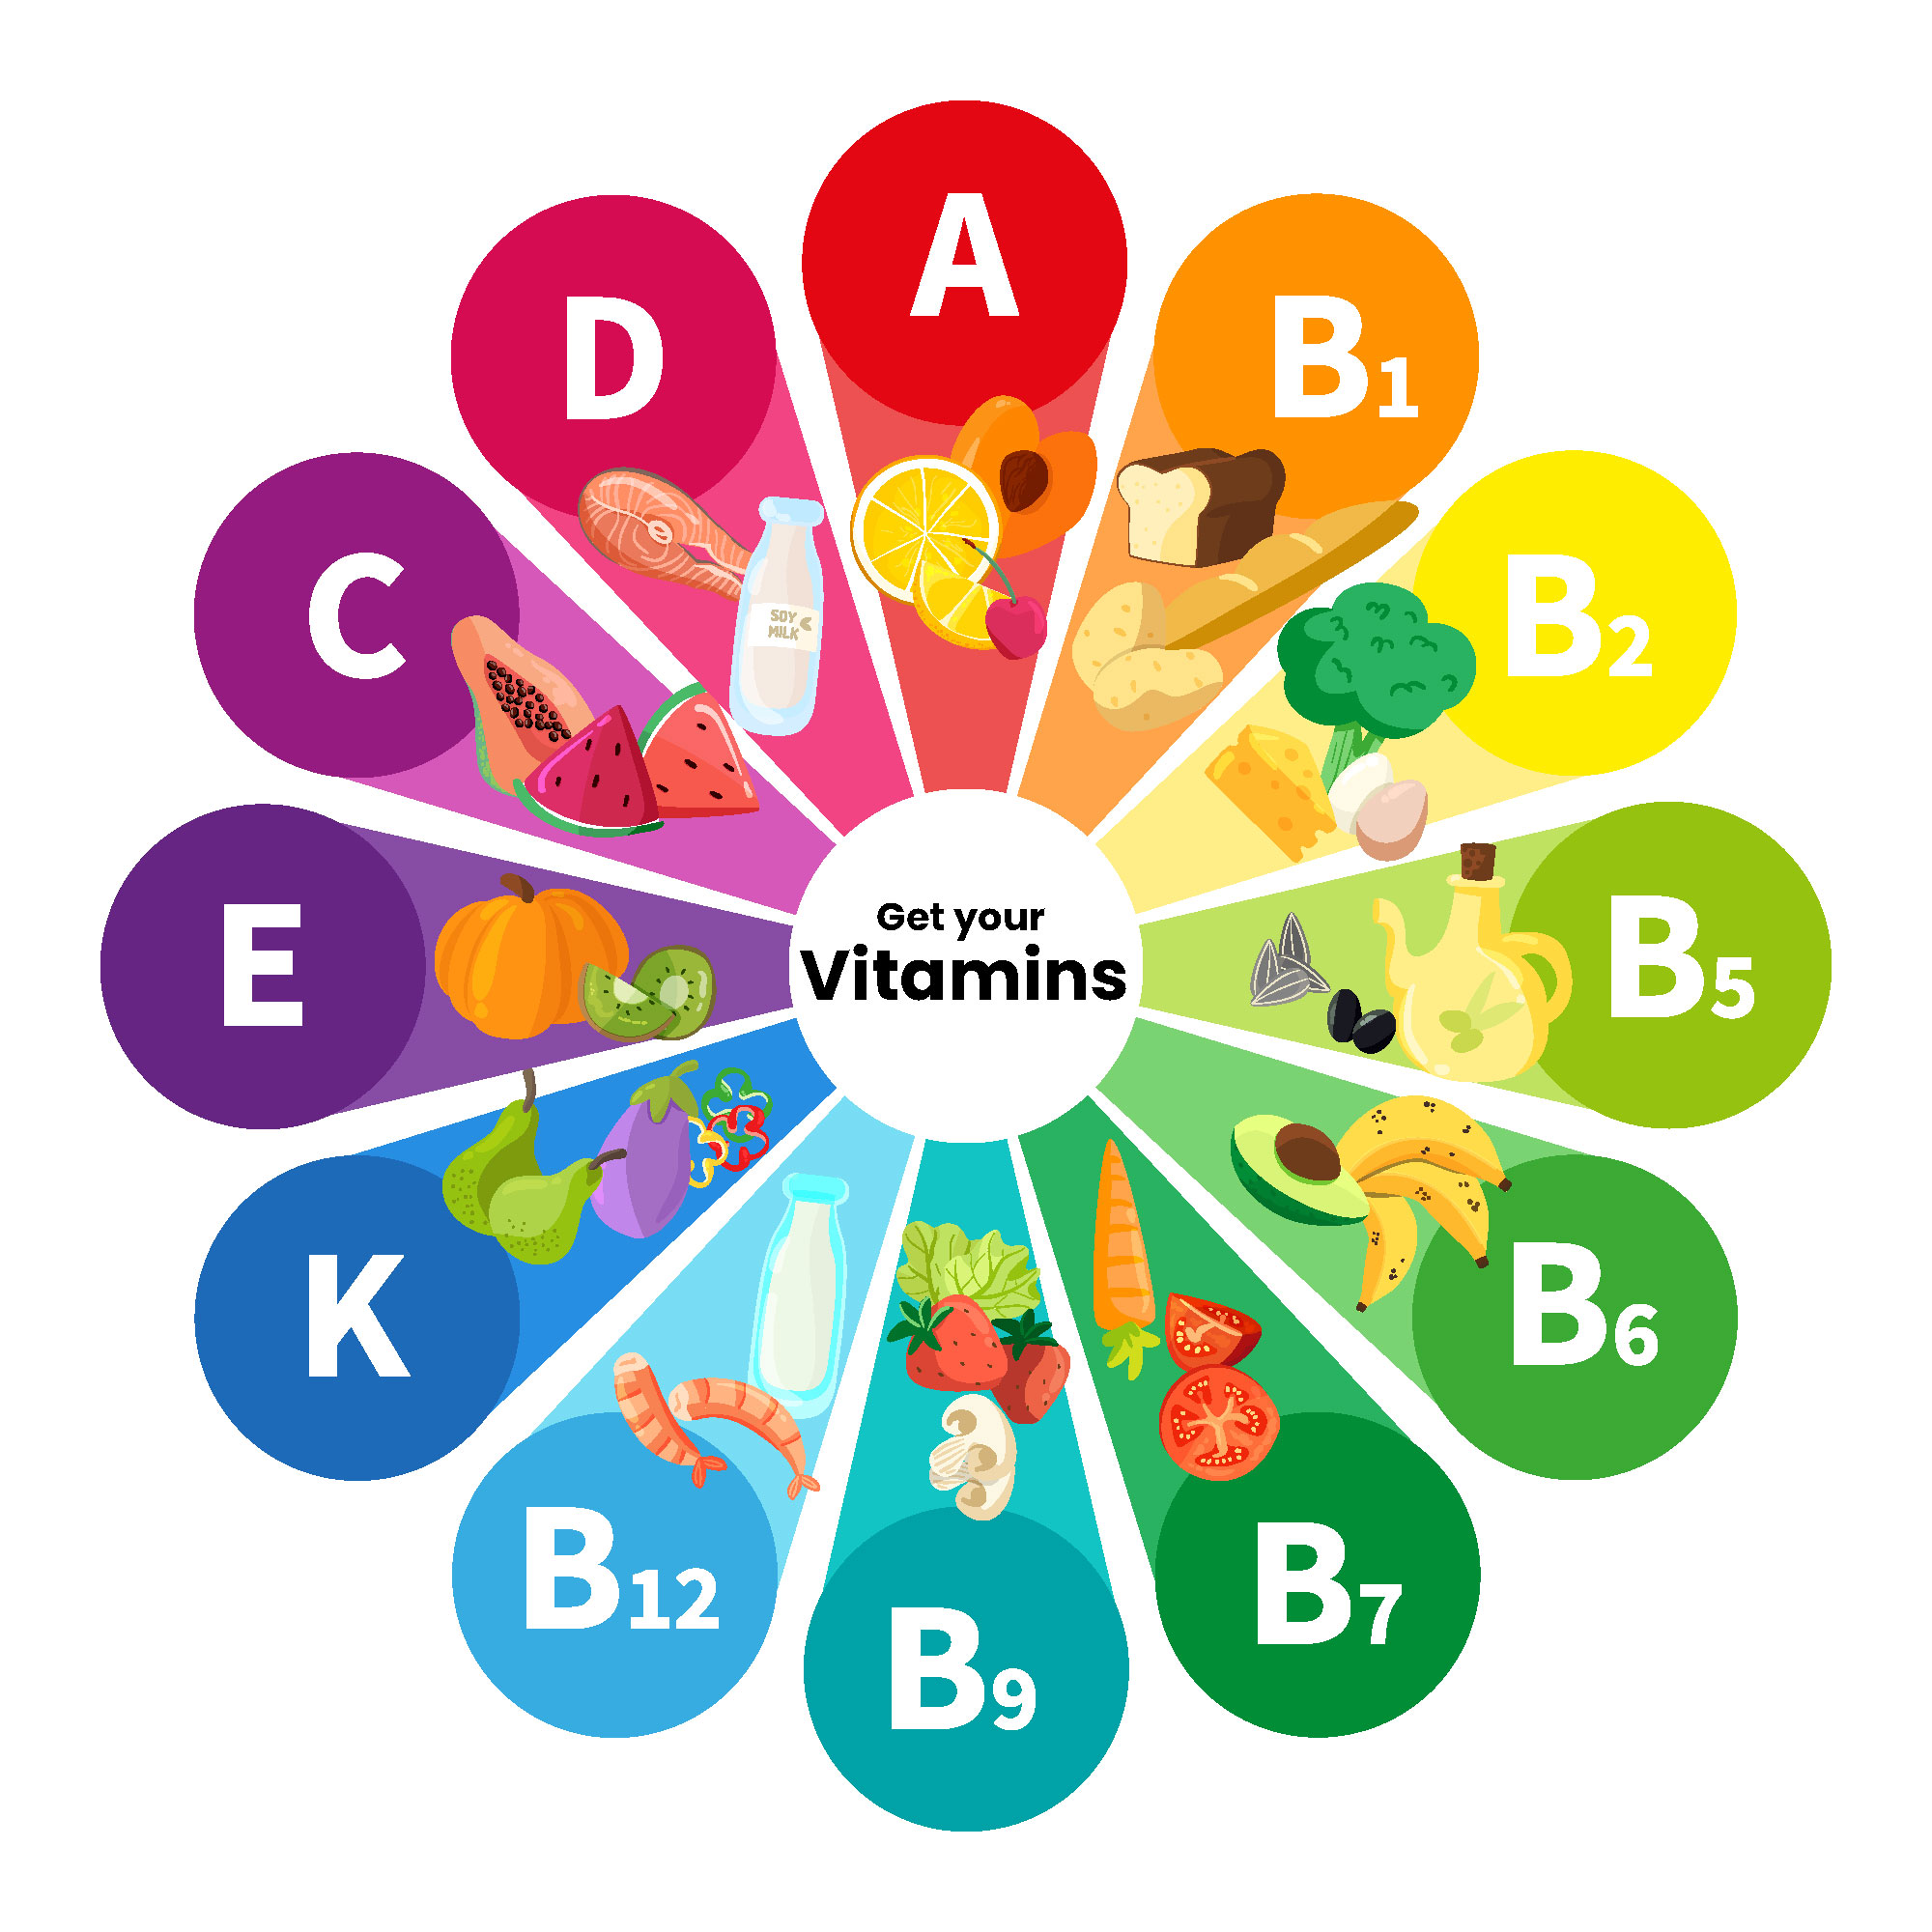 Vitamin Ingredients